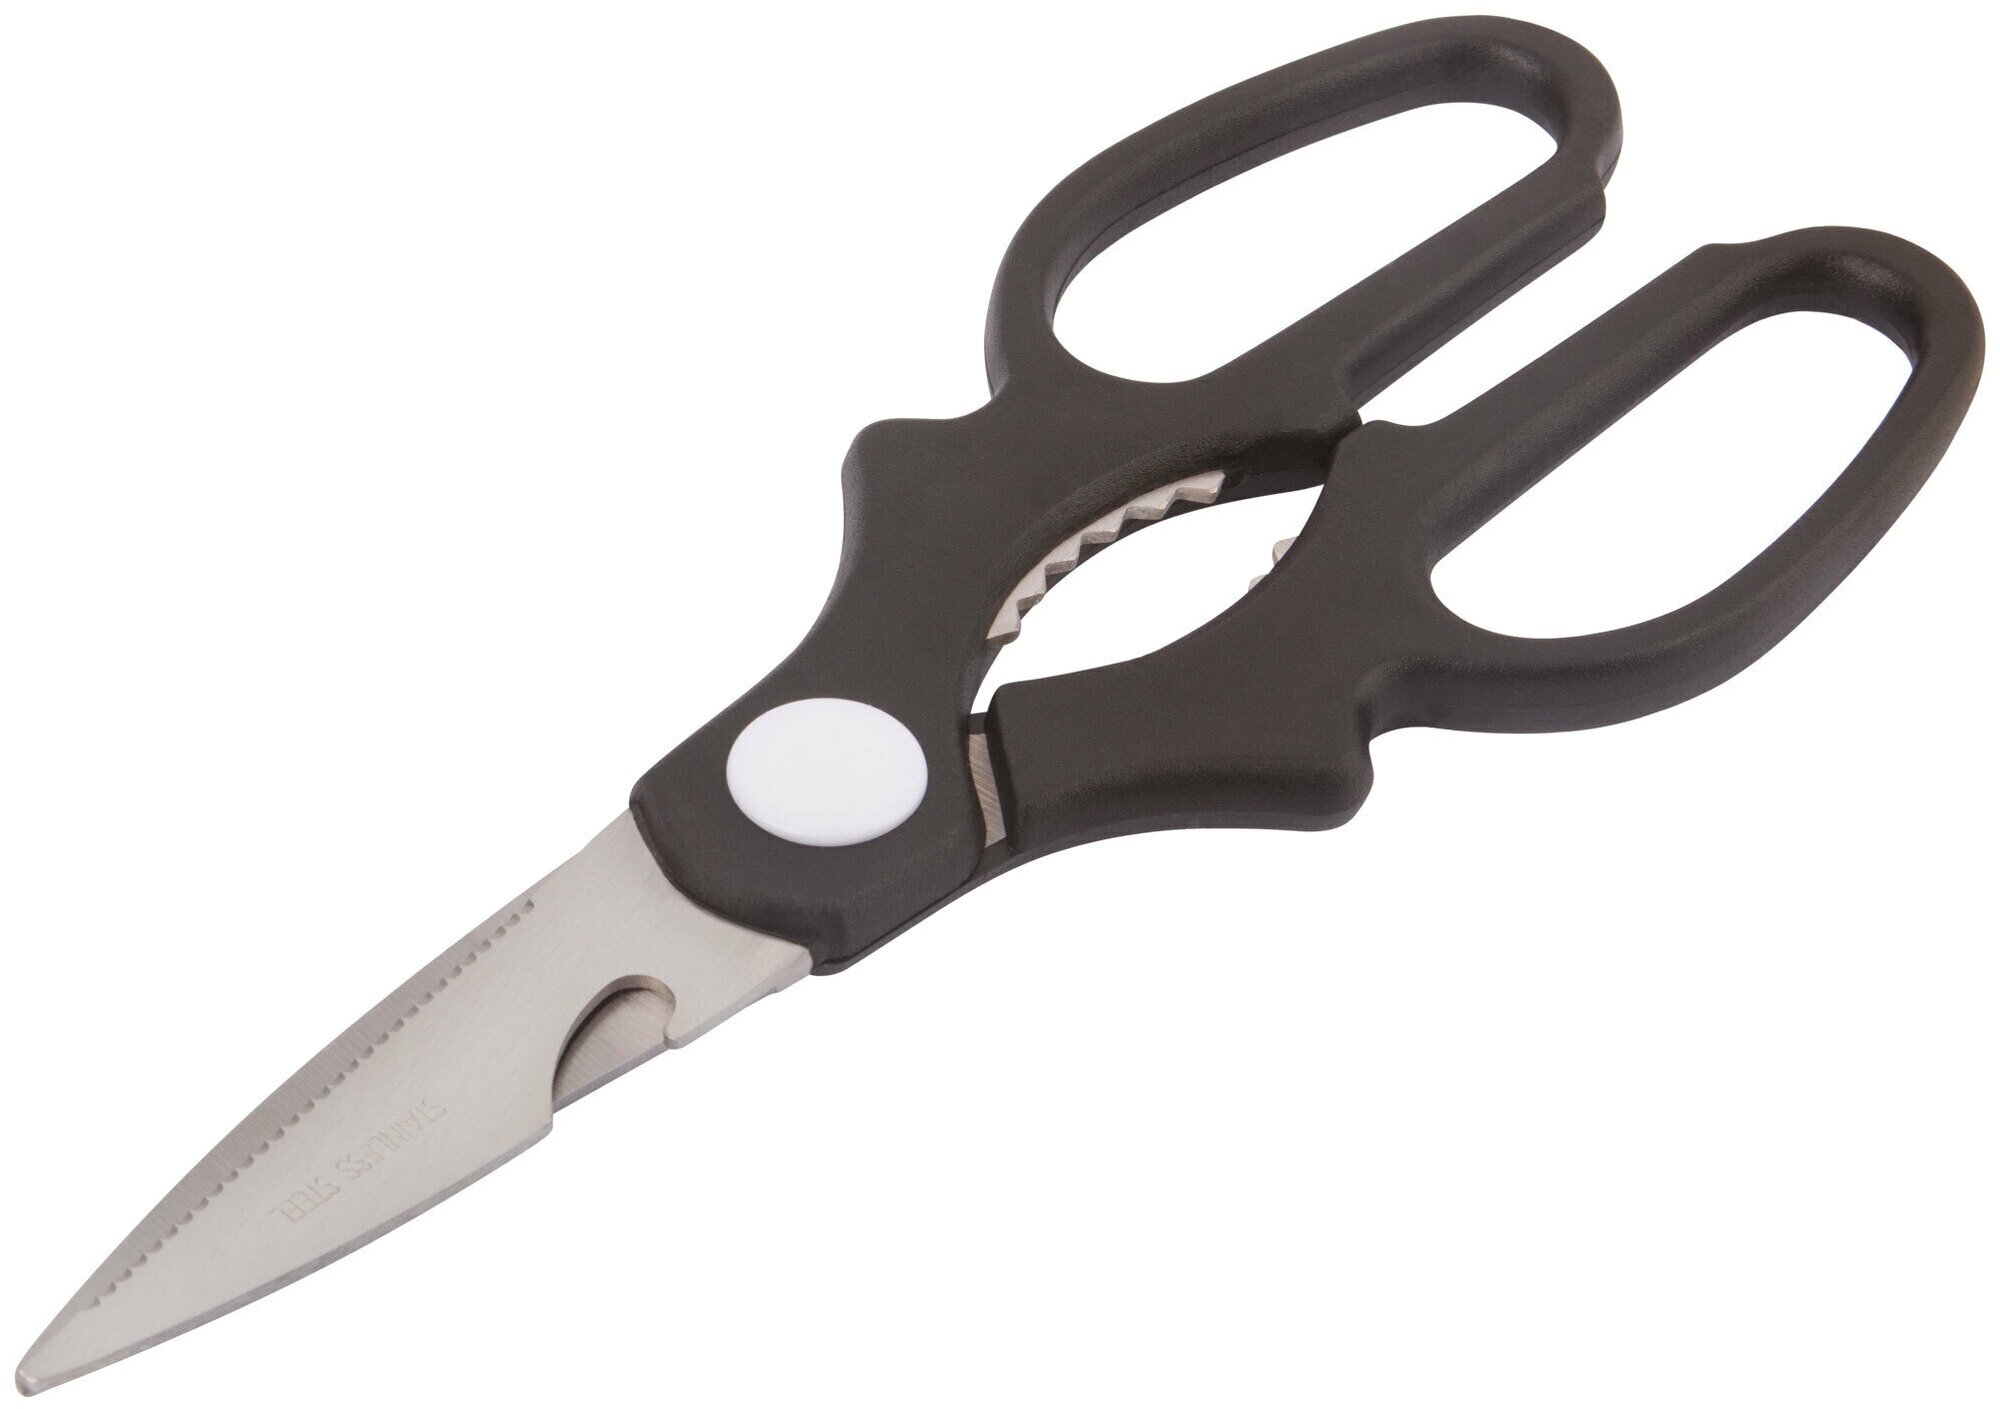 Ножницы технические нержавеющие, толщина лезвия 1,8 мм, 205 мм 67314М